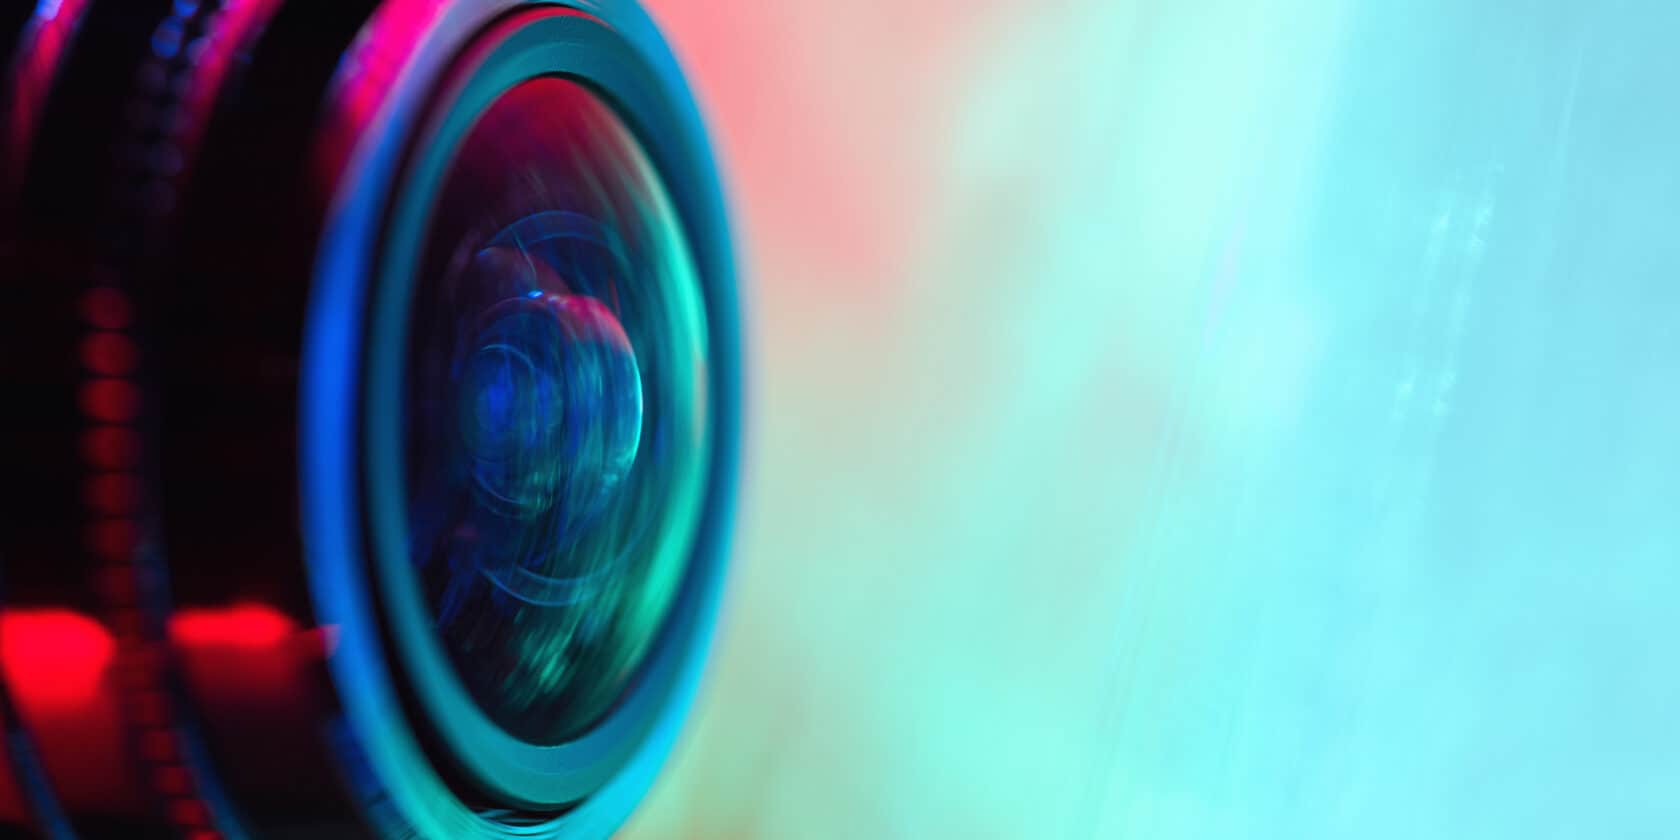 A close up view of a camera lens.